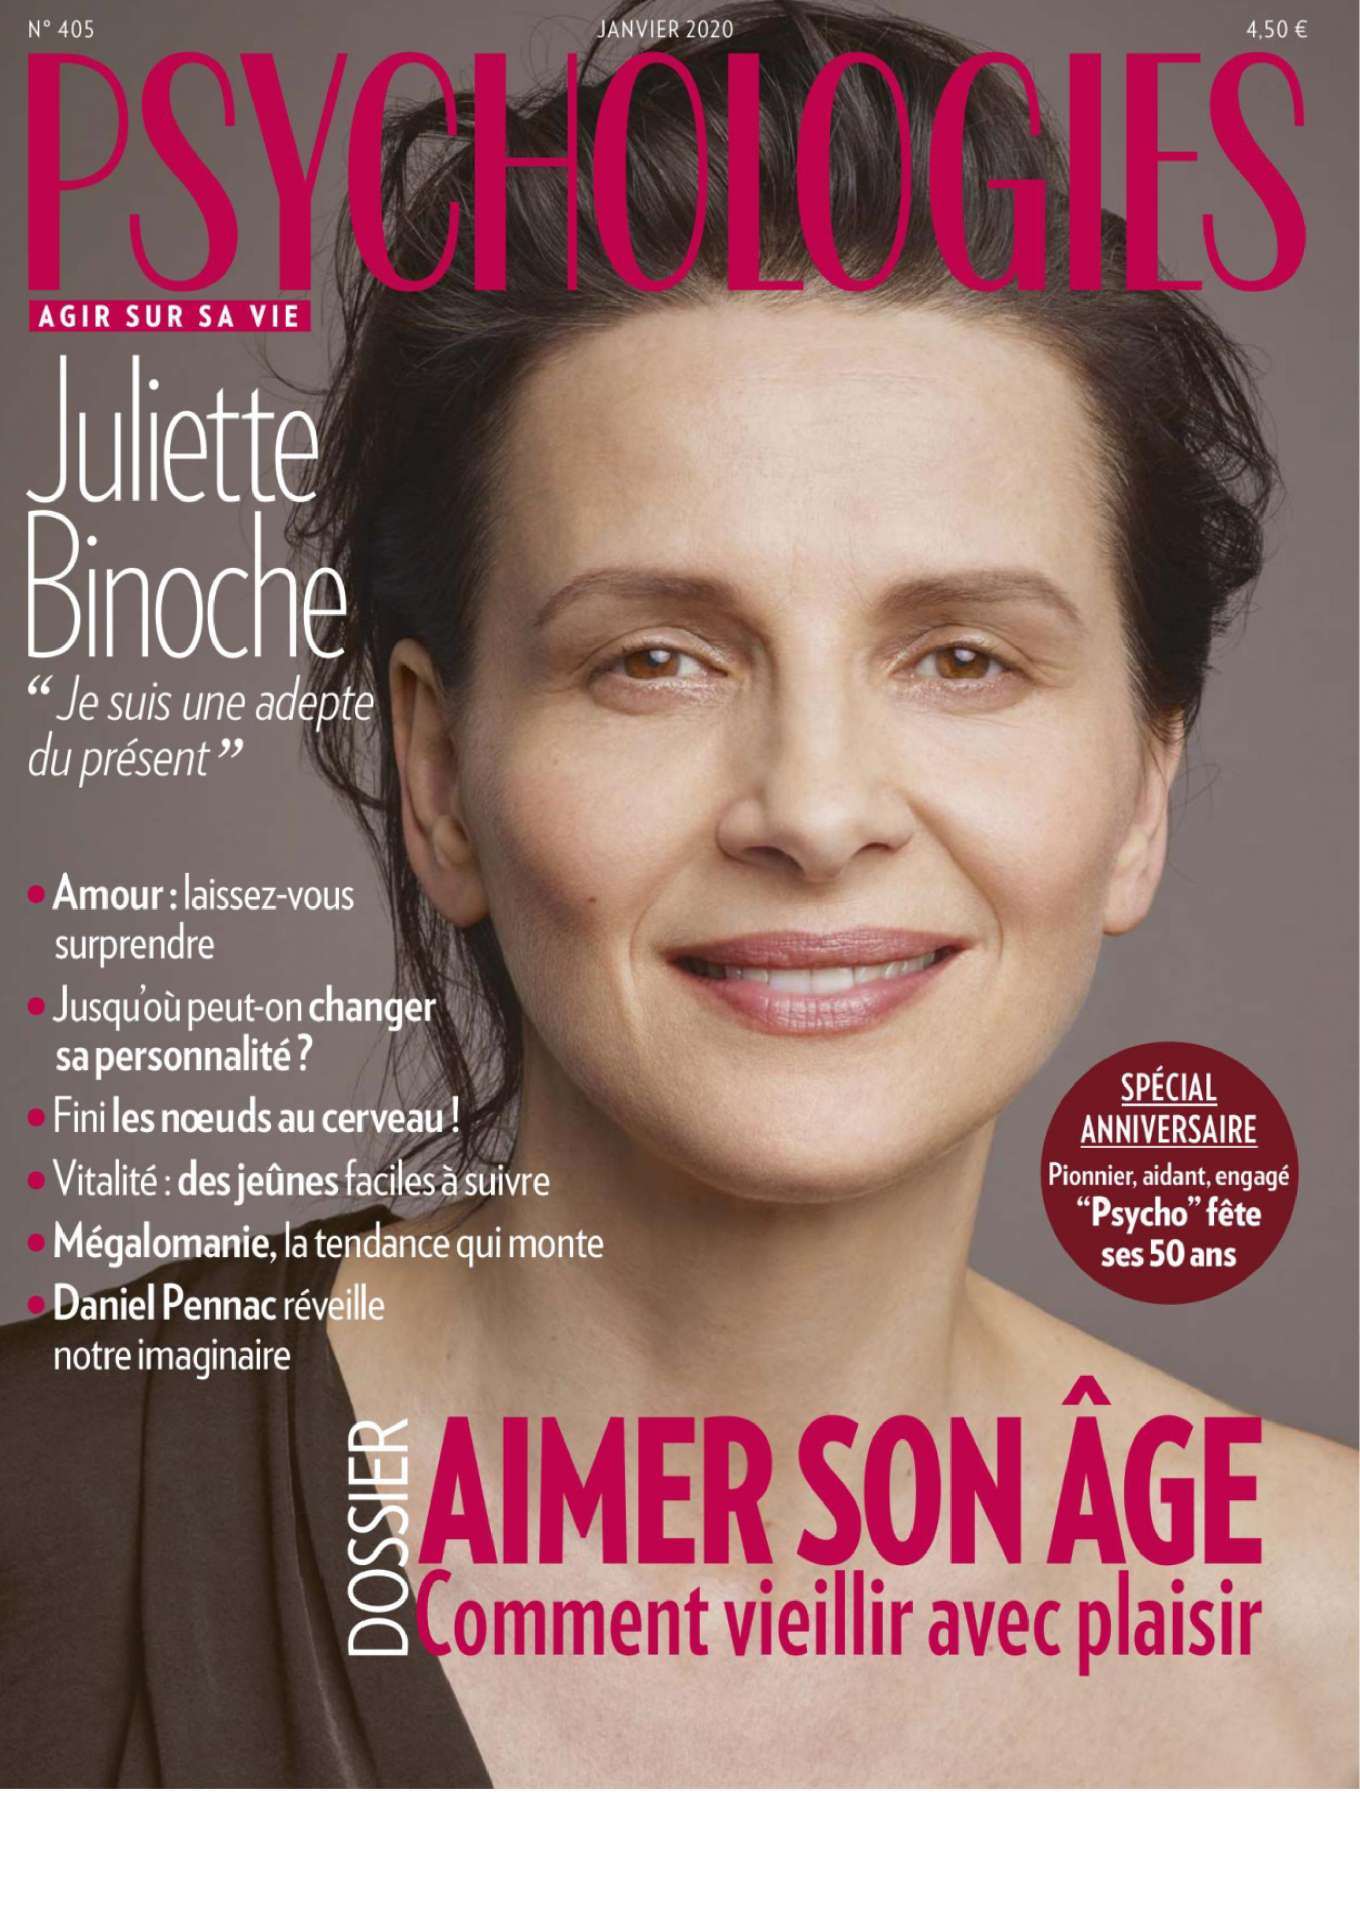 Juliette Binoche 2019 : Juliette Binoche – Psychologies France 2020-07